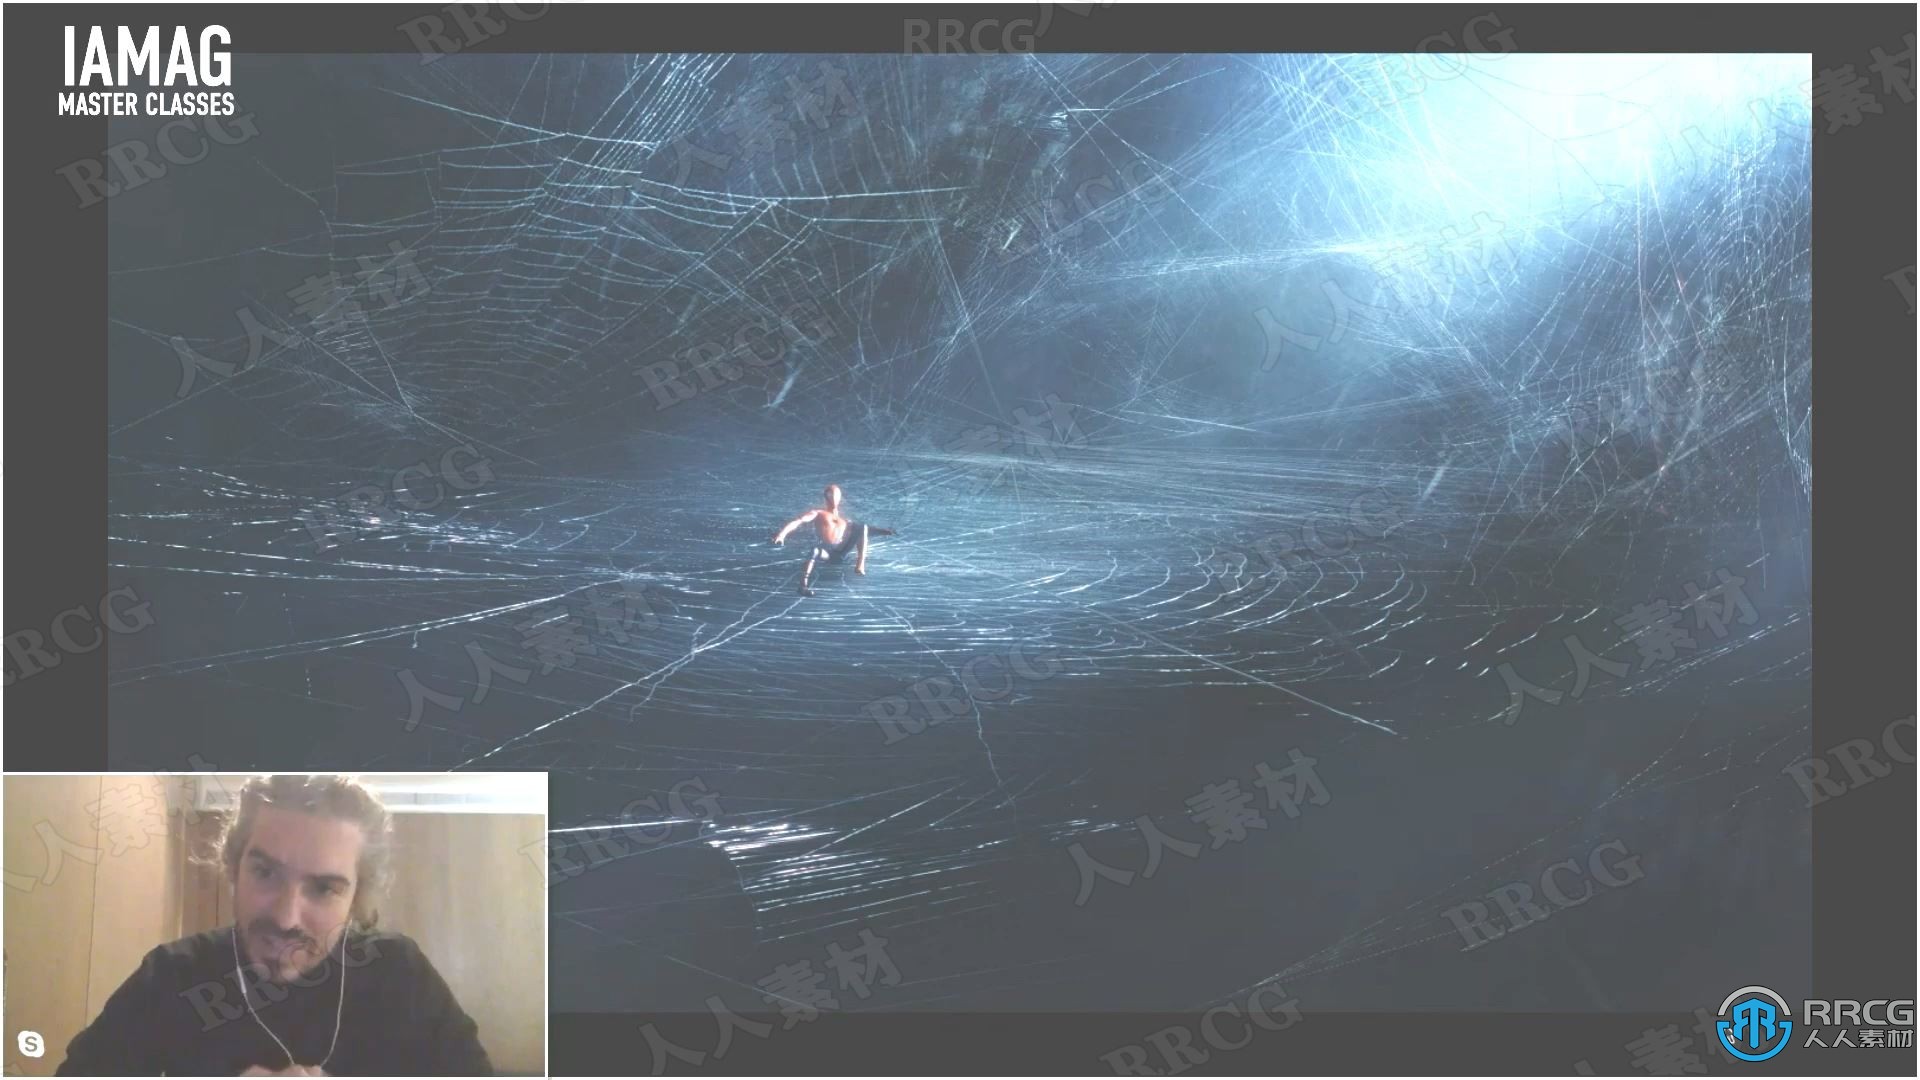 创建VFX漫威蜘蛛侠幻觉之战镜头处理概念图视频教程